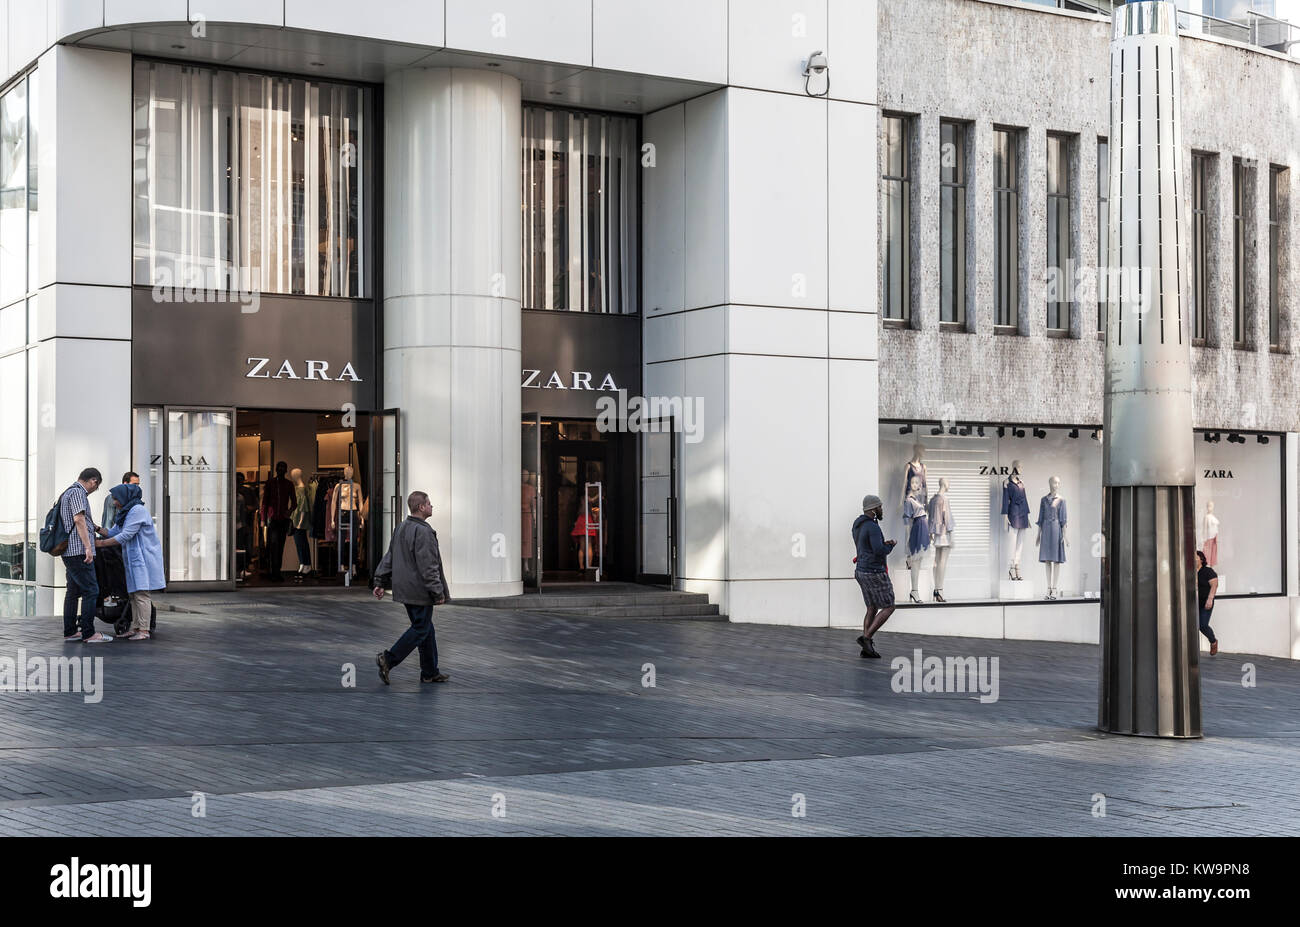 Zara retail fashion Stock Photo 